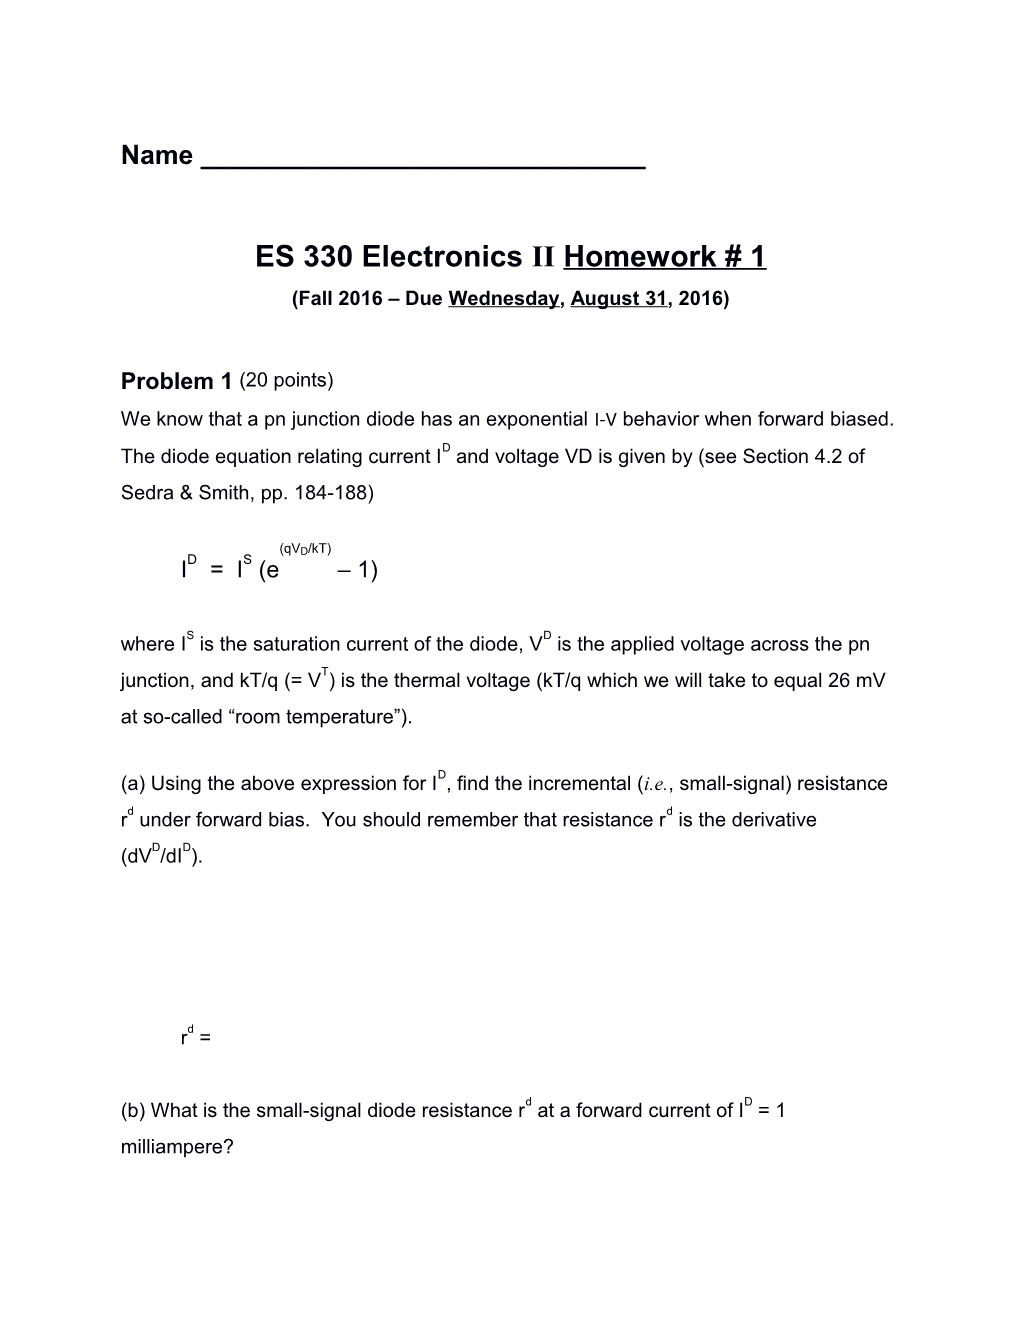 ES 330 Electronics Iihomework #1